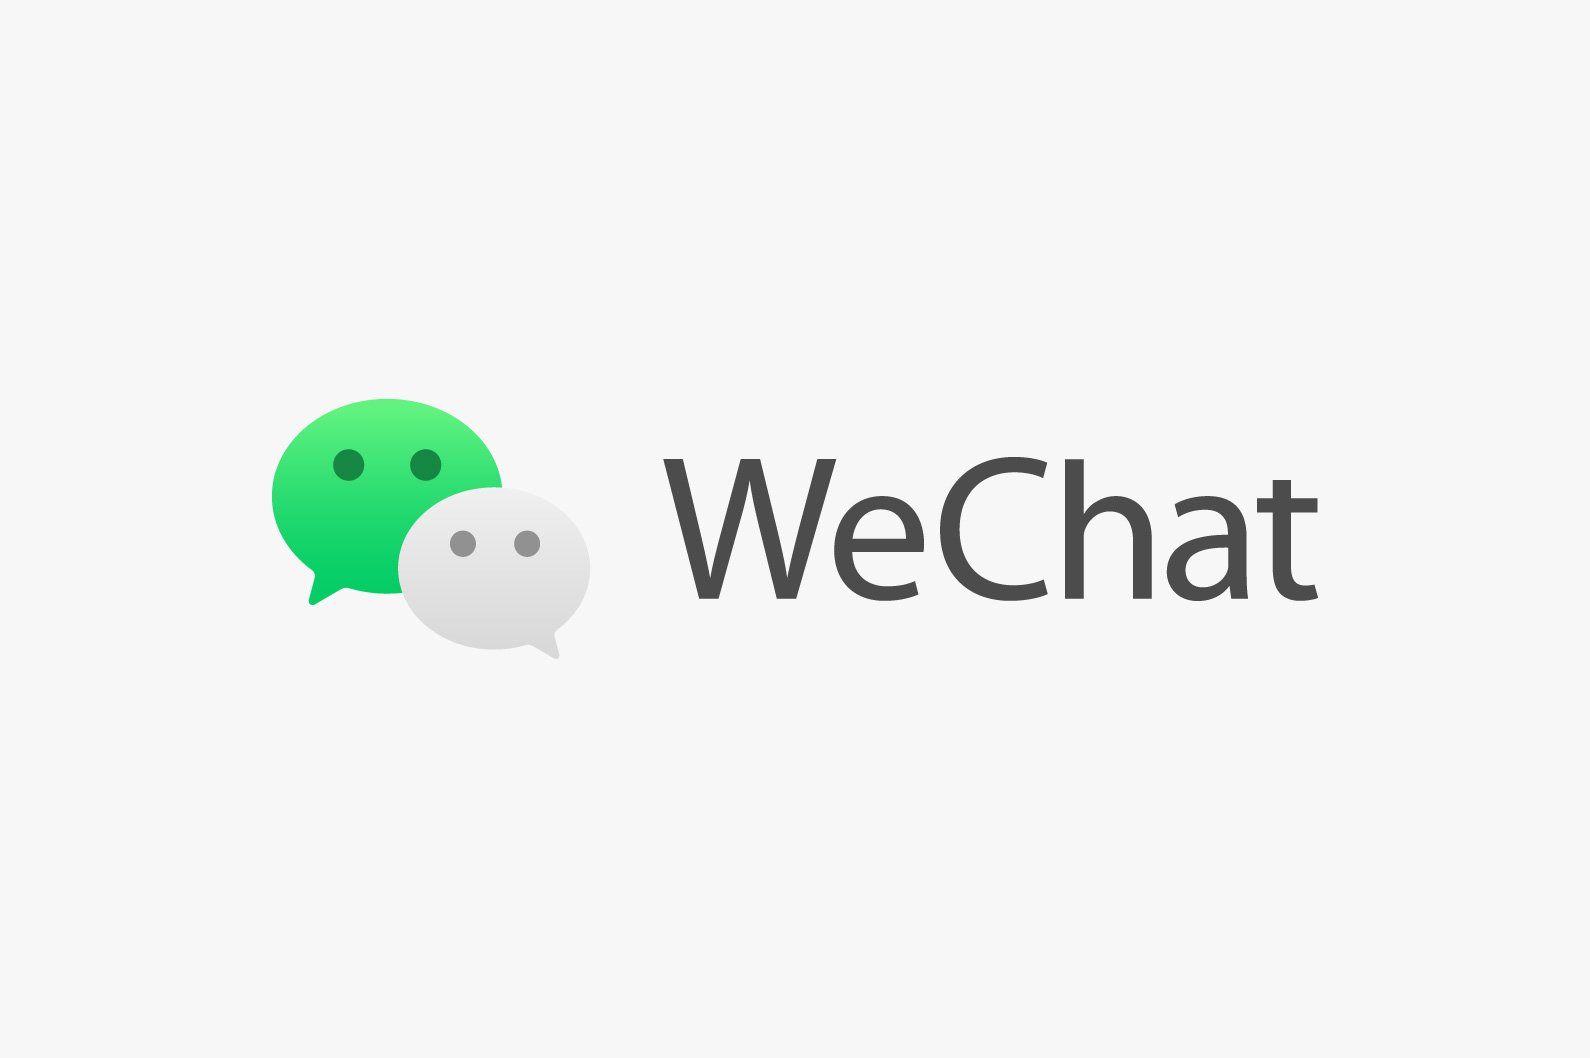 จีนสั่งห้าม Wechat รับผู้ใช้ใหม่ ระบุต้องอัพเกรดความปลอดภัย | Blognone